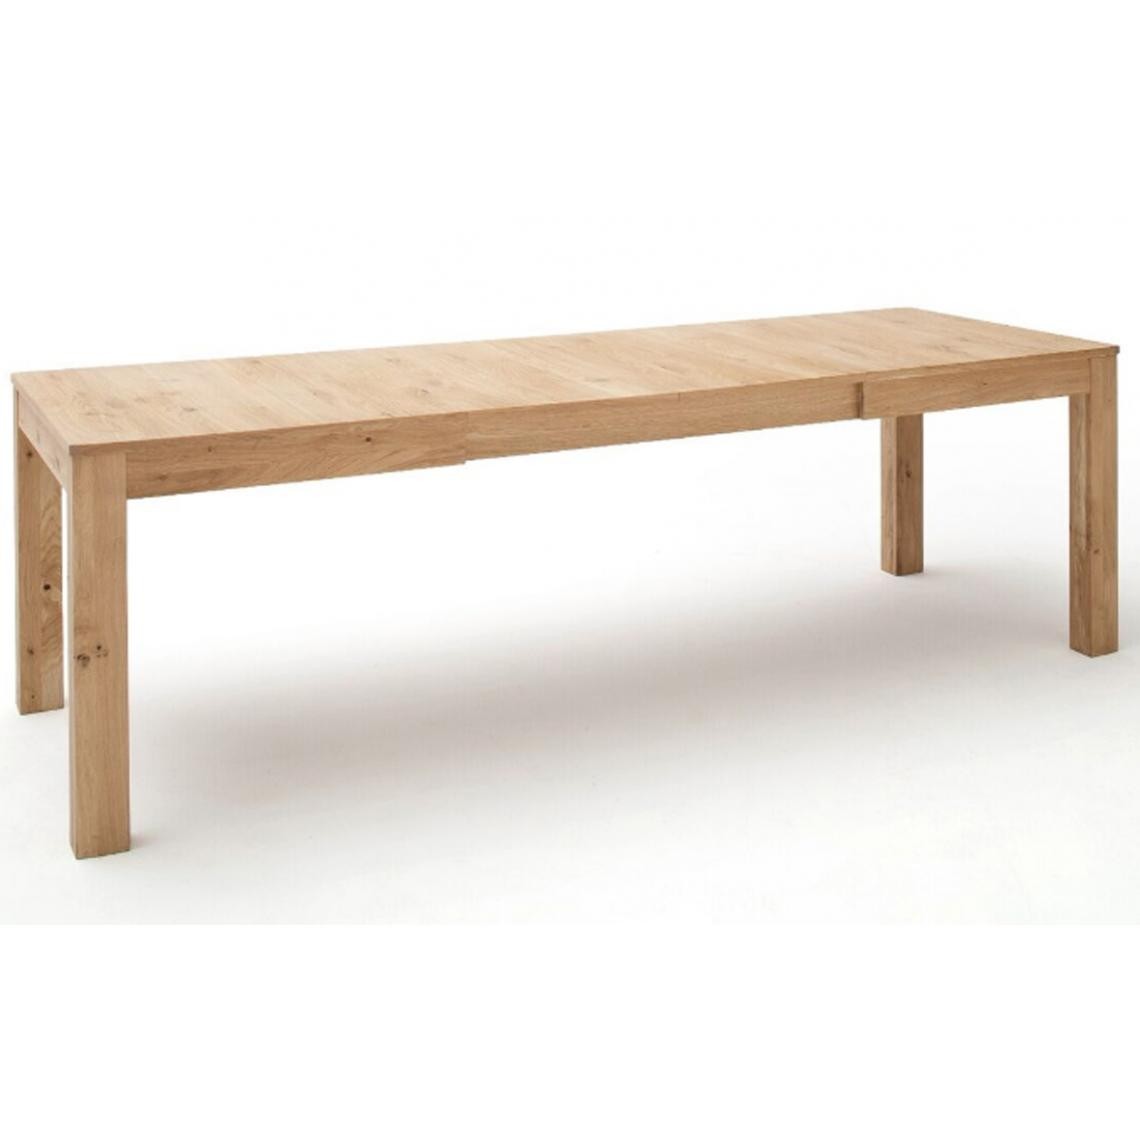 Pegane - Table à manger extensible en chêne blanchi - L.160 x H.79 x P.90 cm - Tables à manger